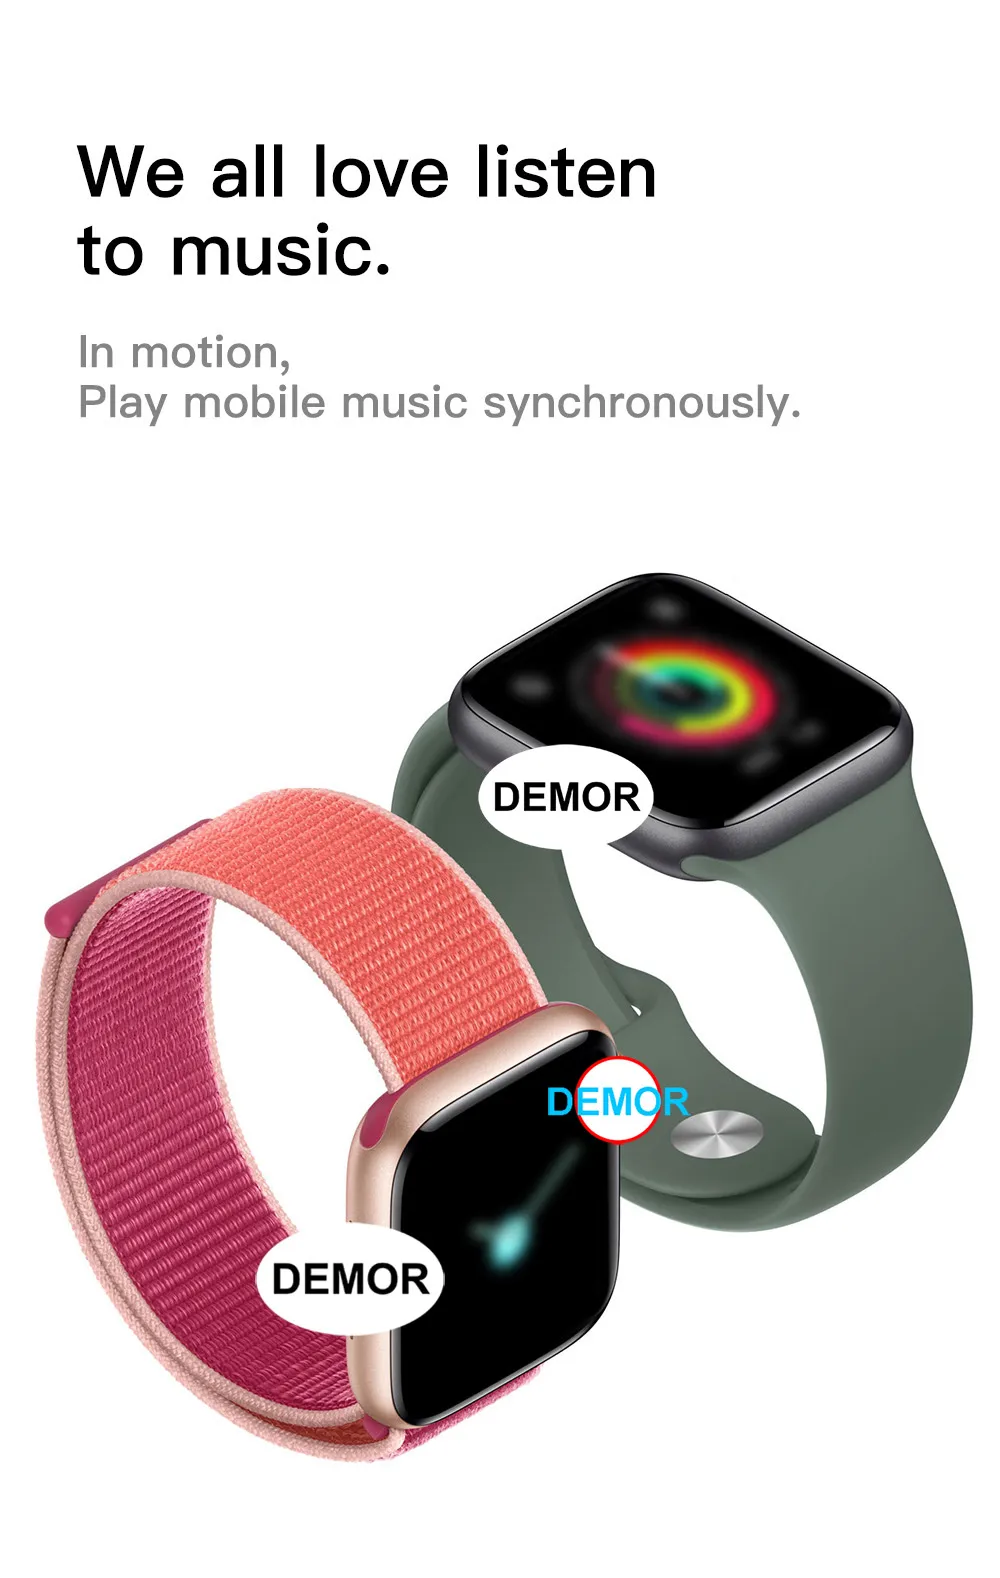 DEMOR умные часы серии 5 для мужчин и женщин 40 мм 44 мм подключенный монитор сердечного ритма умные часы для Apple iOS iPhone 11X8 Android телефон